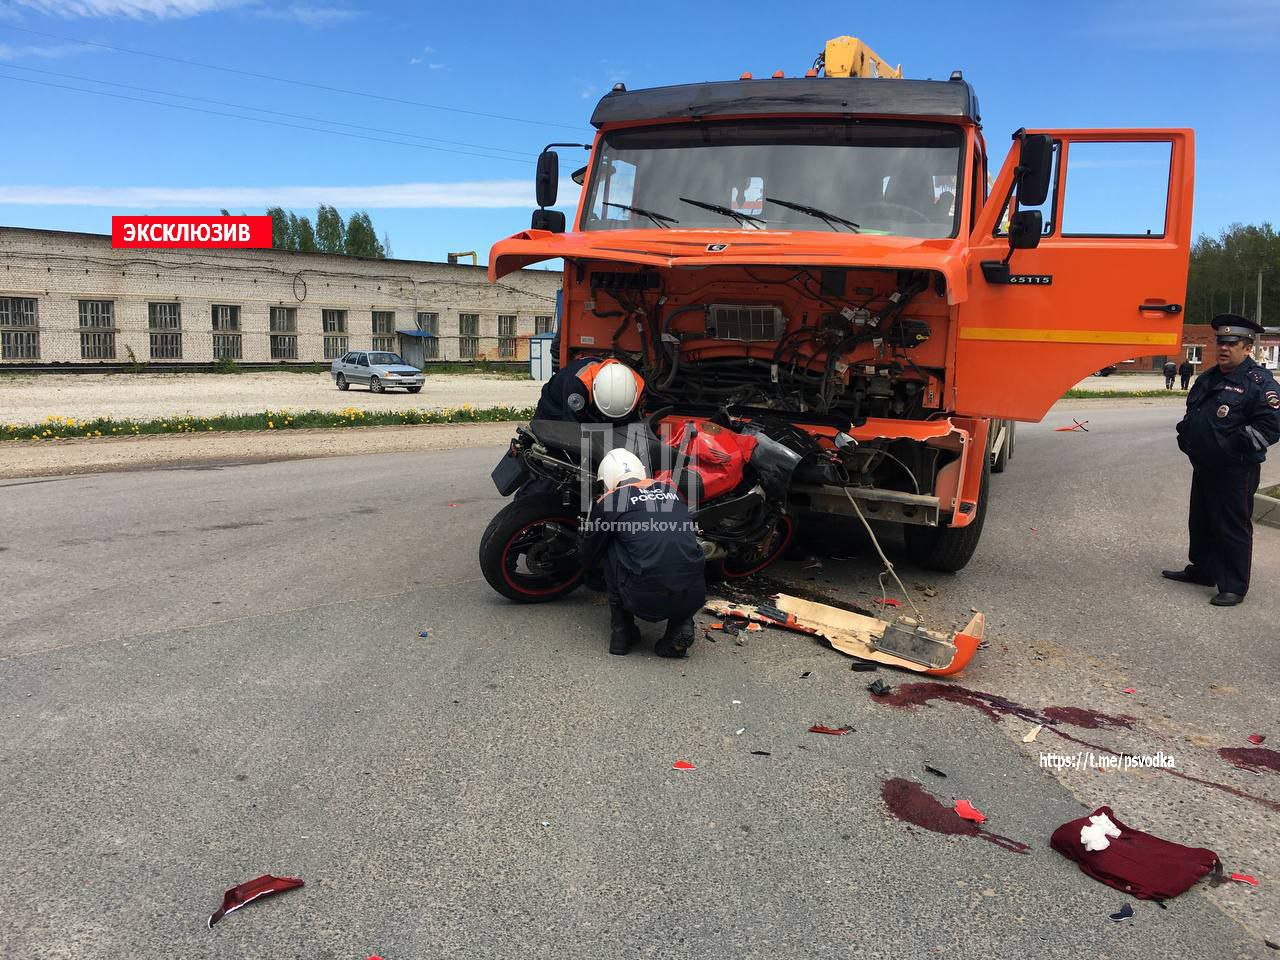 Мотоциклист госпитализирован в тяжелом сотсоянии после лобового столкновения с КАМАЗом 